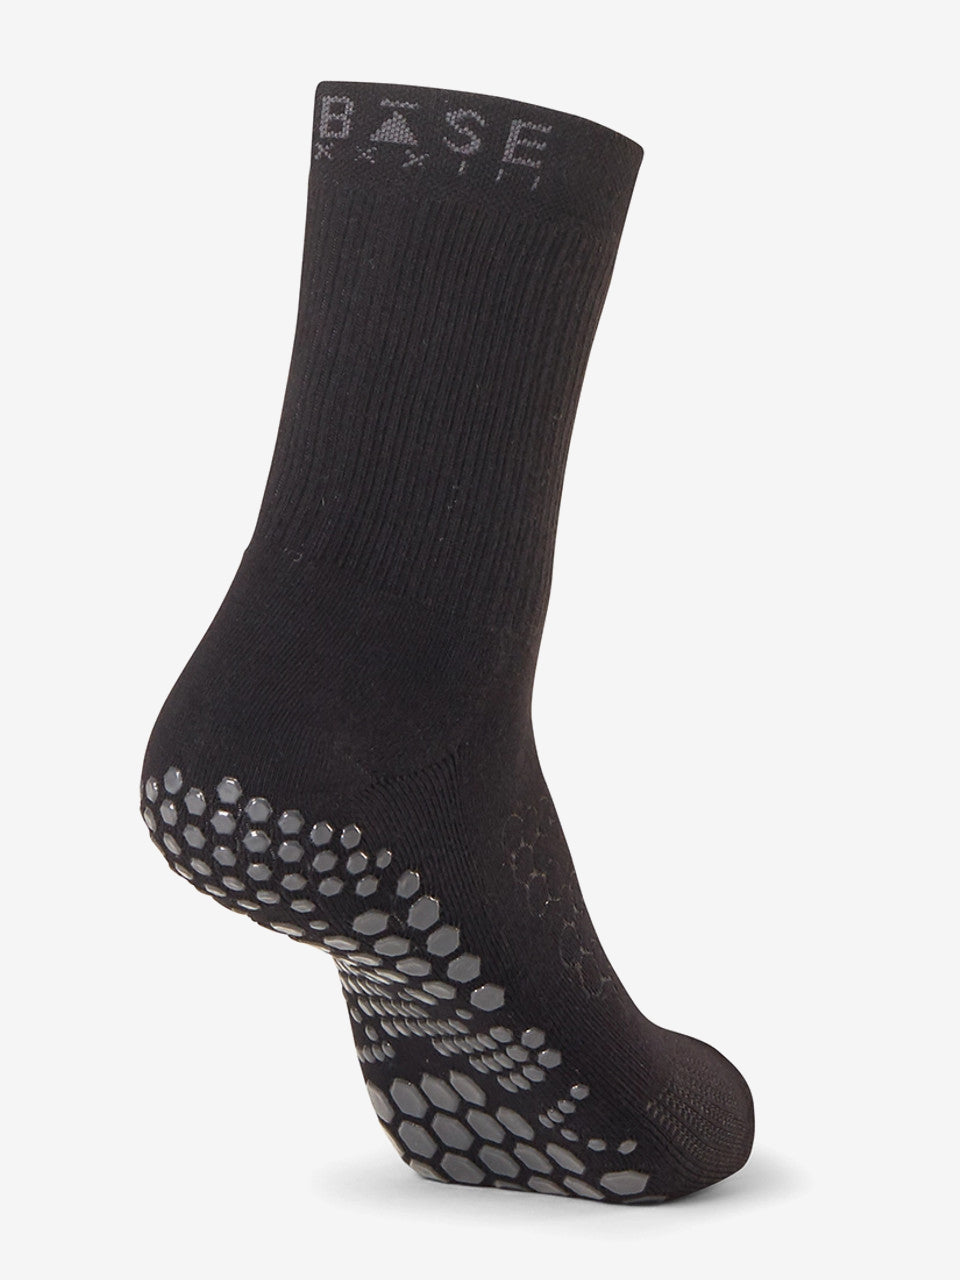 Nike Yoga Studio Grip socks in black